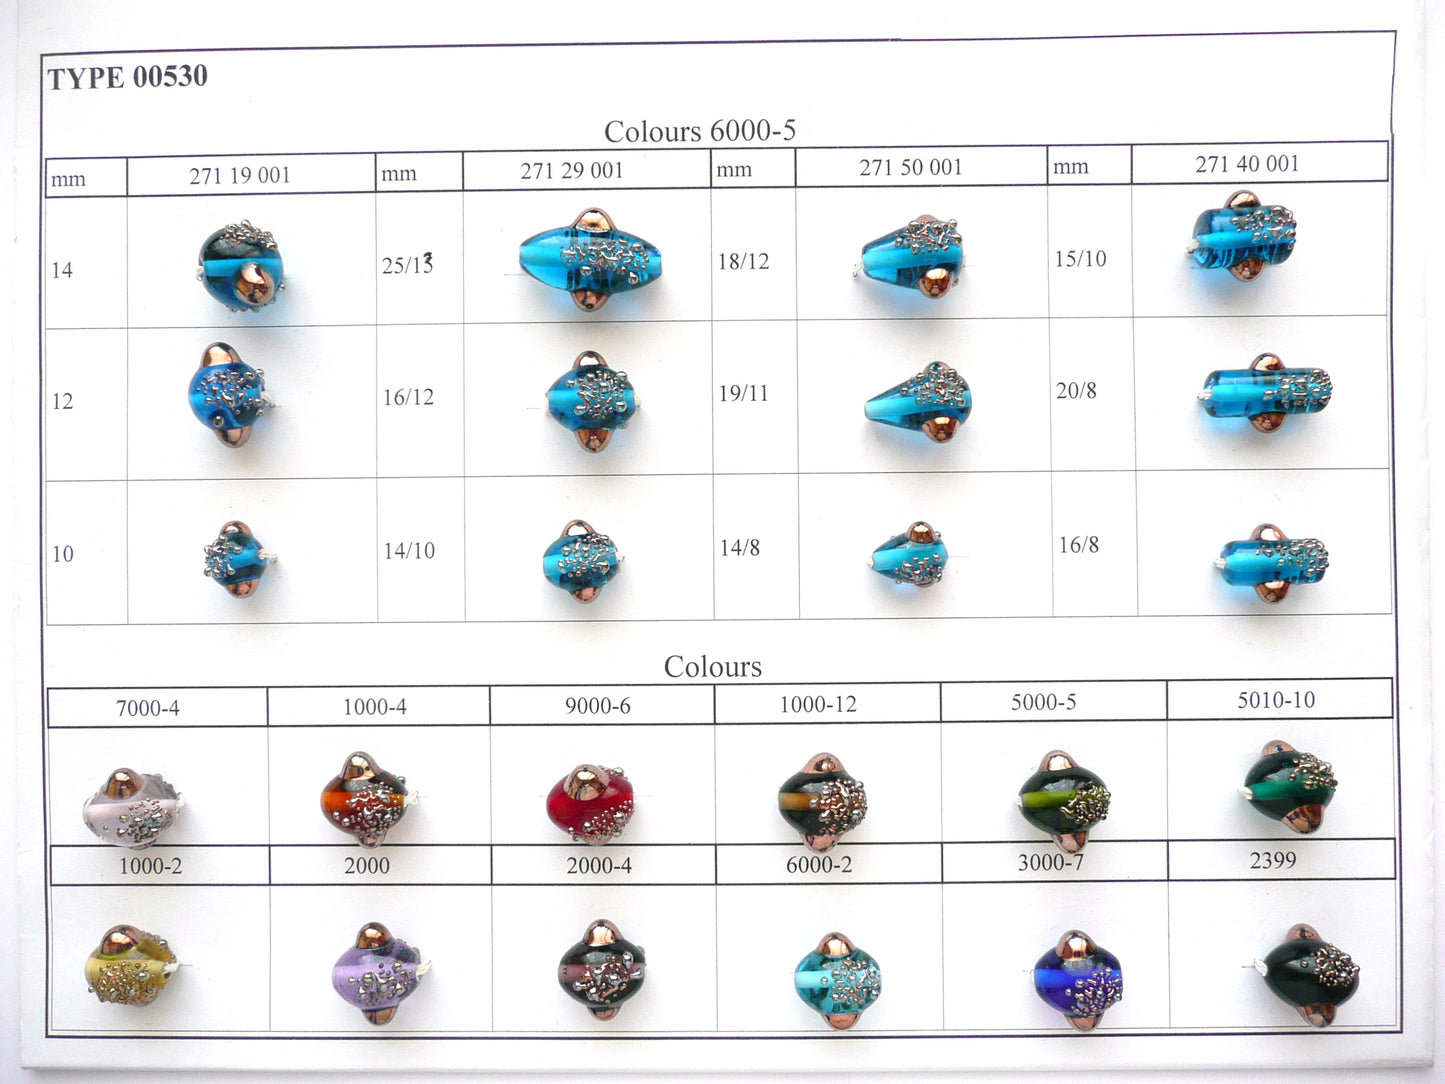 30 颗灯珠 530 / 泪珠/梨 (271-50-001)，手工制作，宝仕奥莎玻璃，捷克共和国